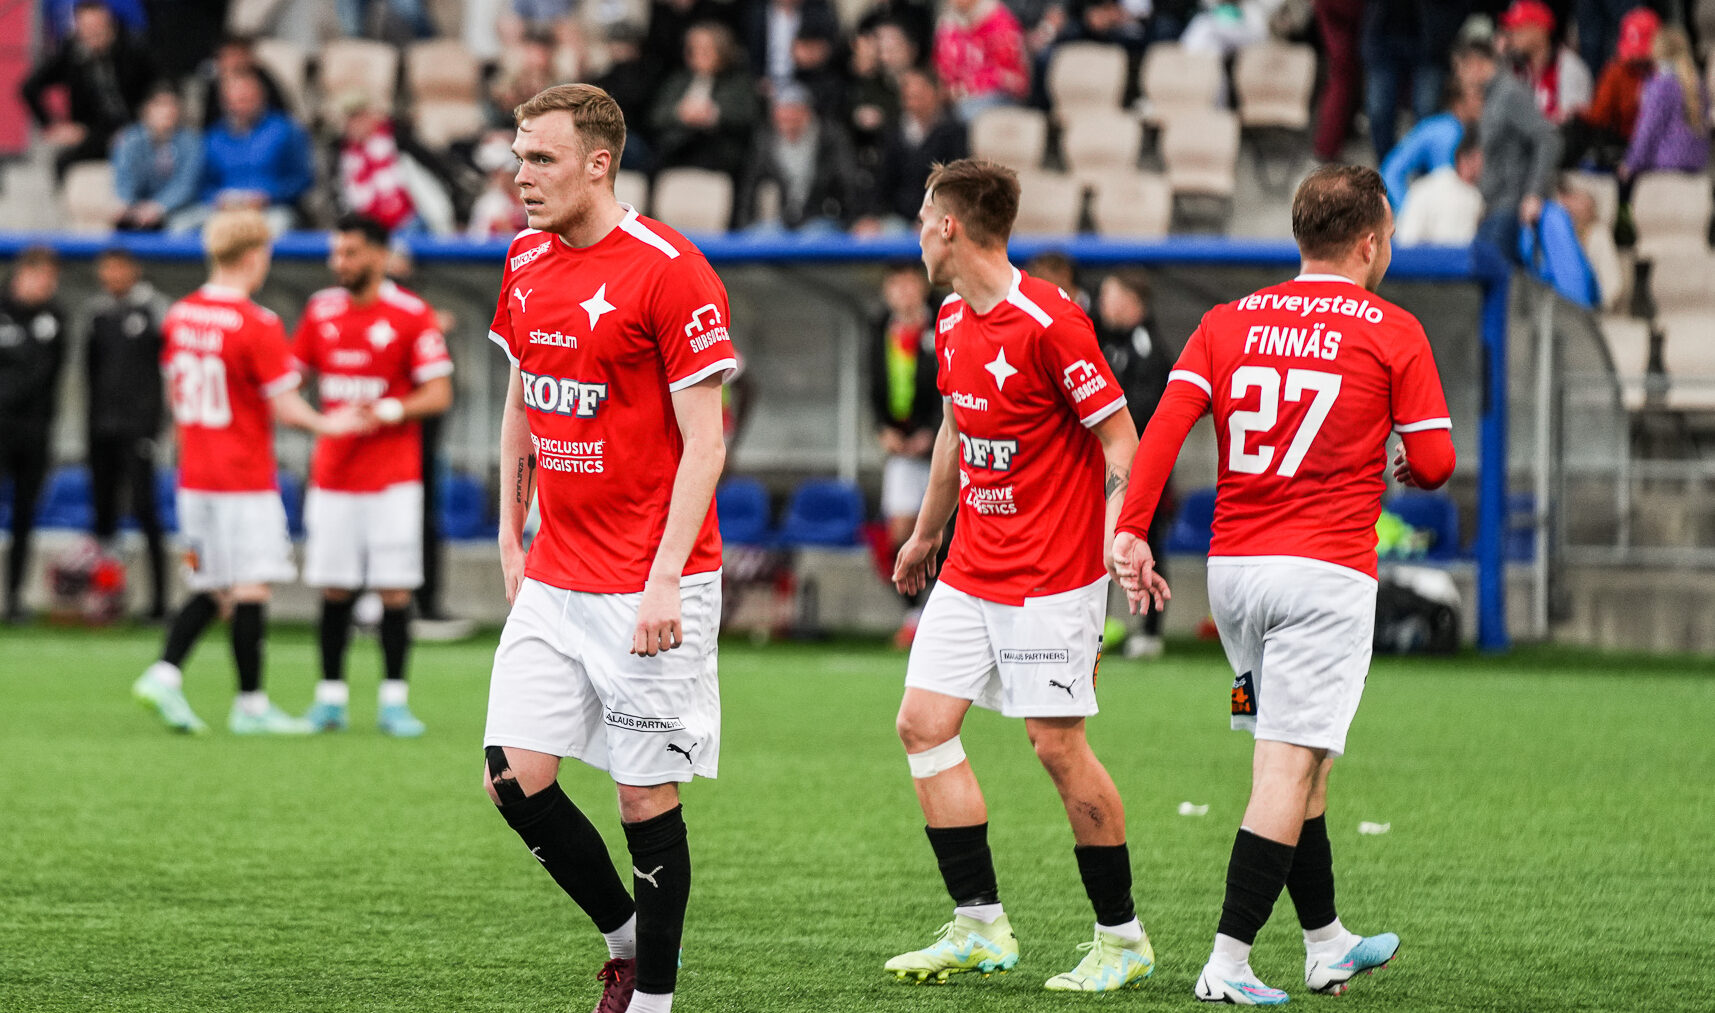 HIFK jää ilman Suomen Cupin jatkopaikkaa upean taistelun jälkeen – KuPS jatkaa puolivälieriin